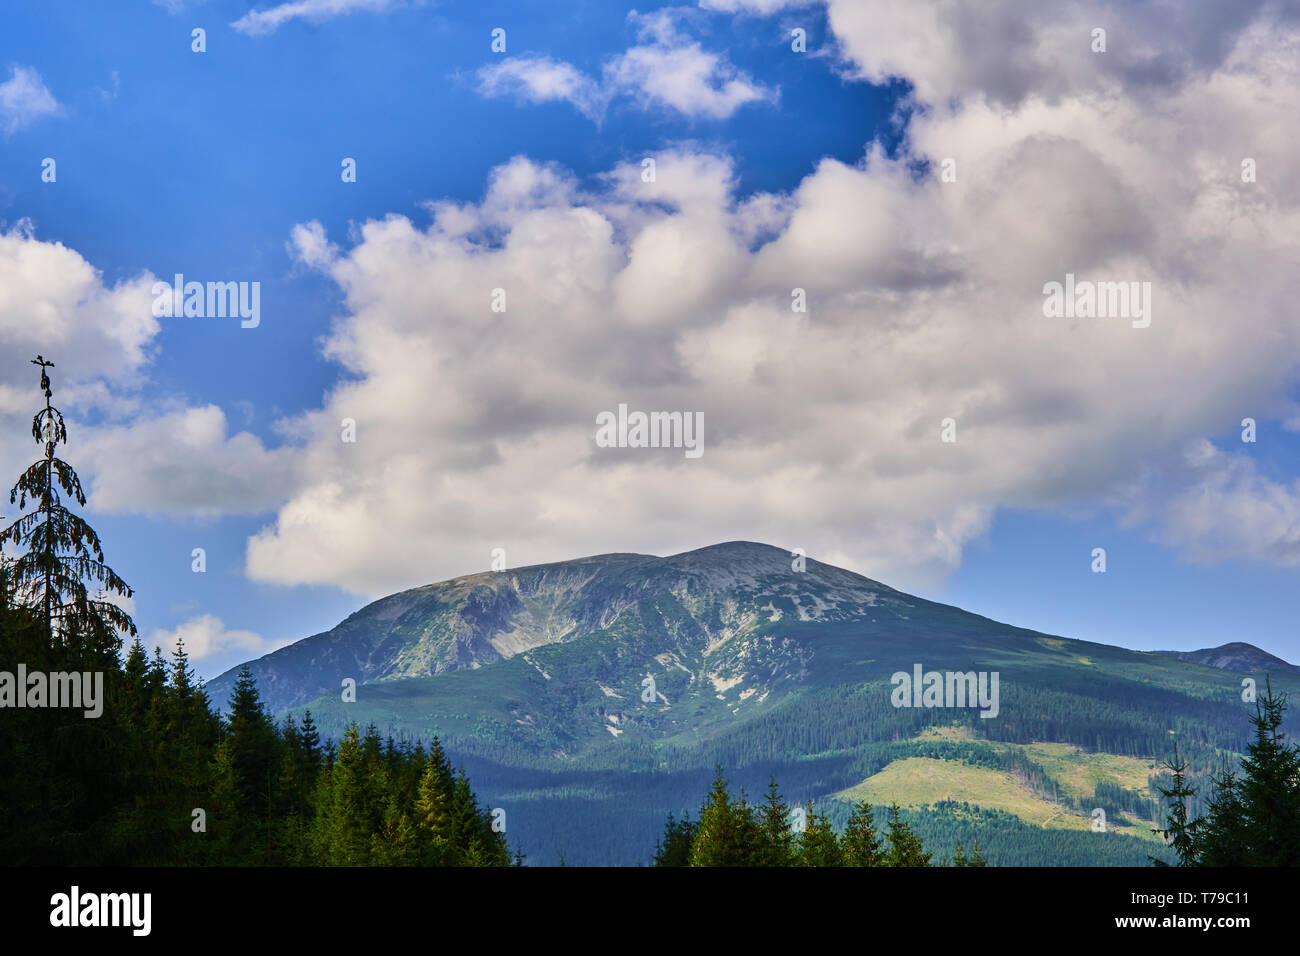 Blauer Himmel über dem Gipfel des Berges und eine Strasse in den Wald mit Tannen Stockfoto